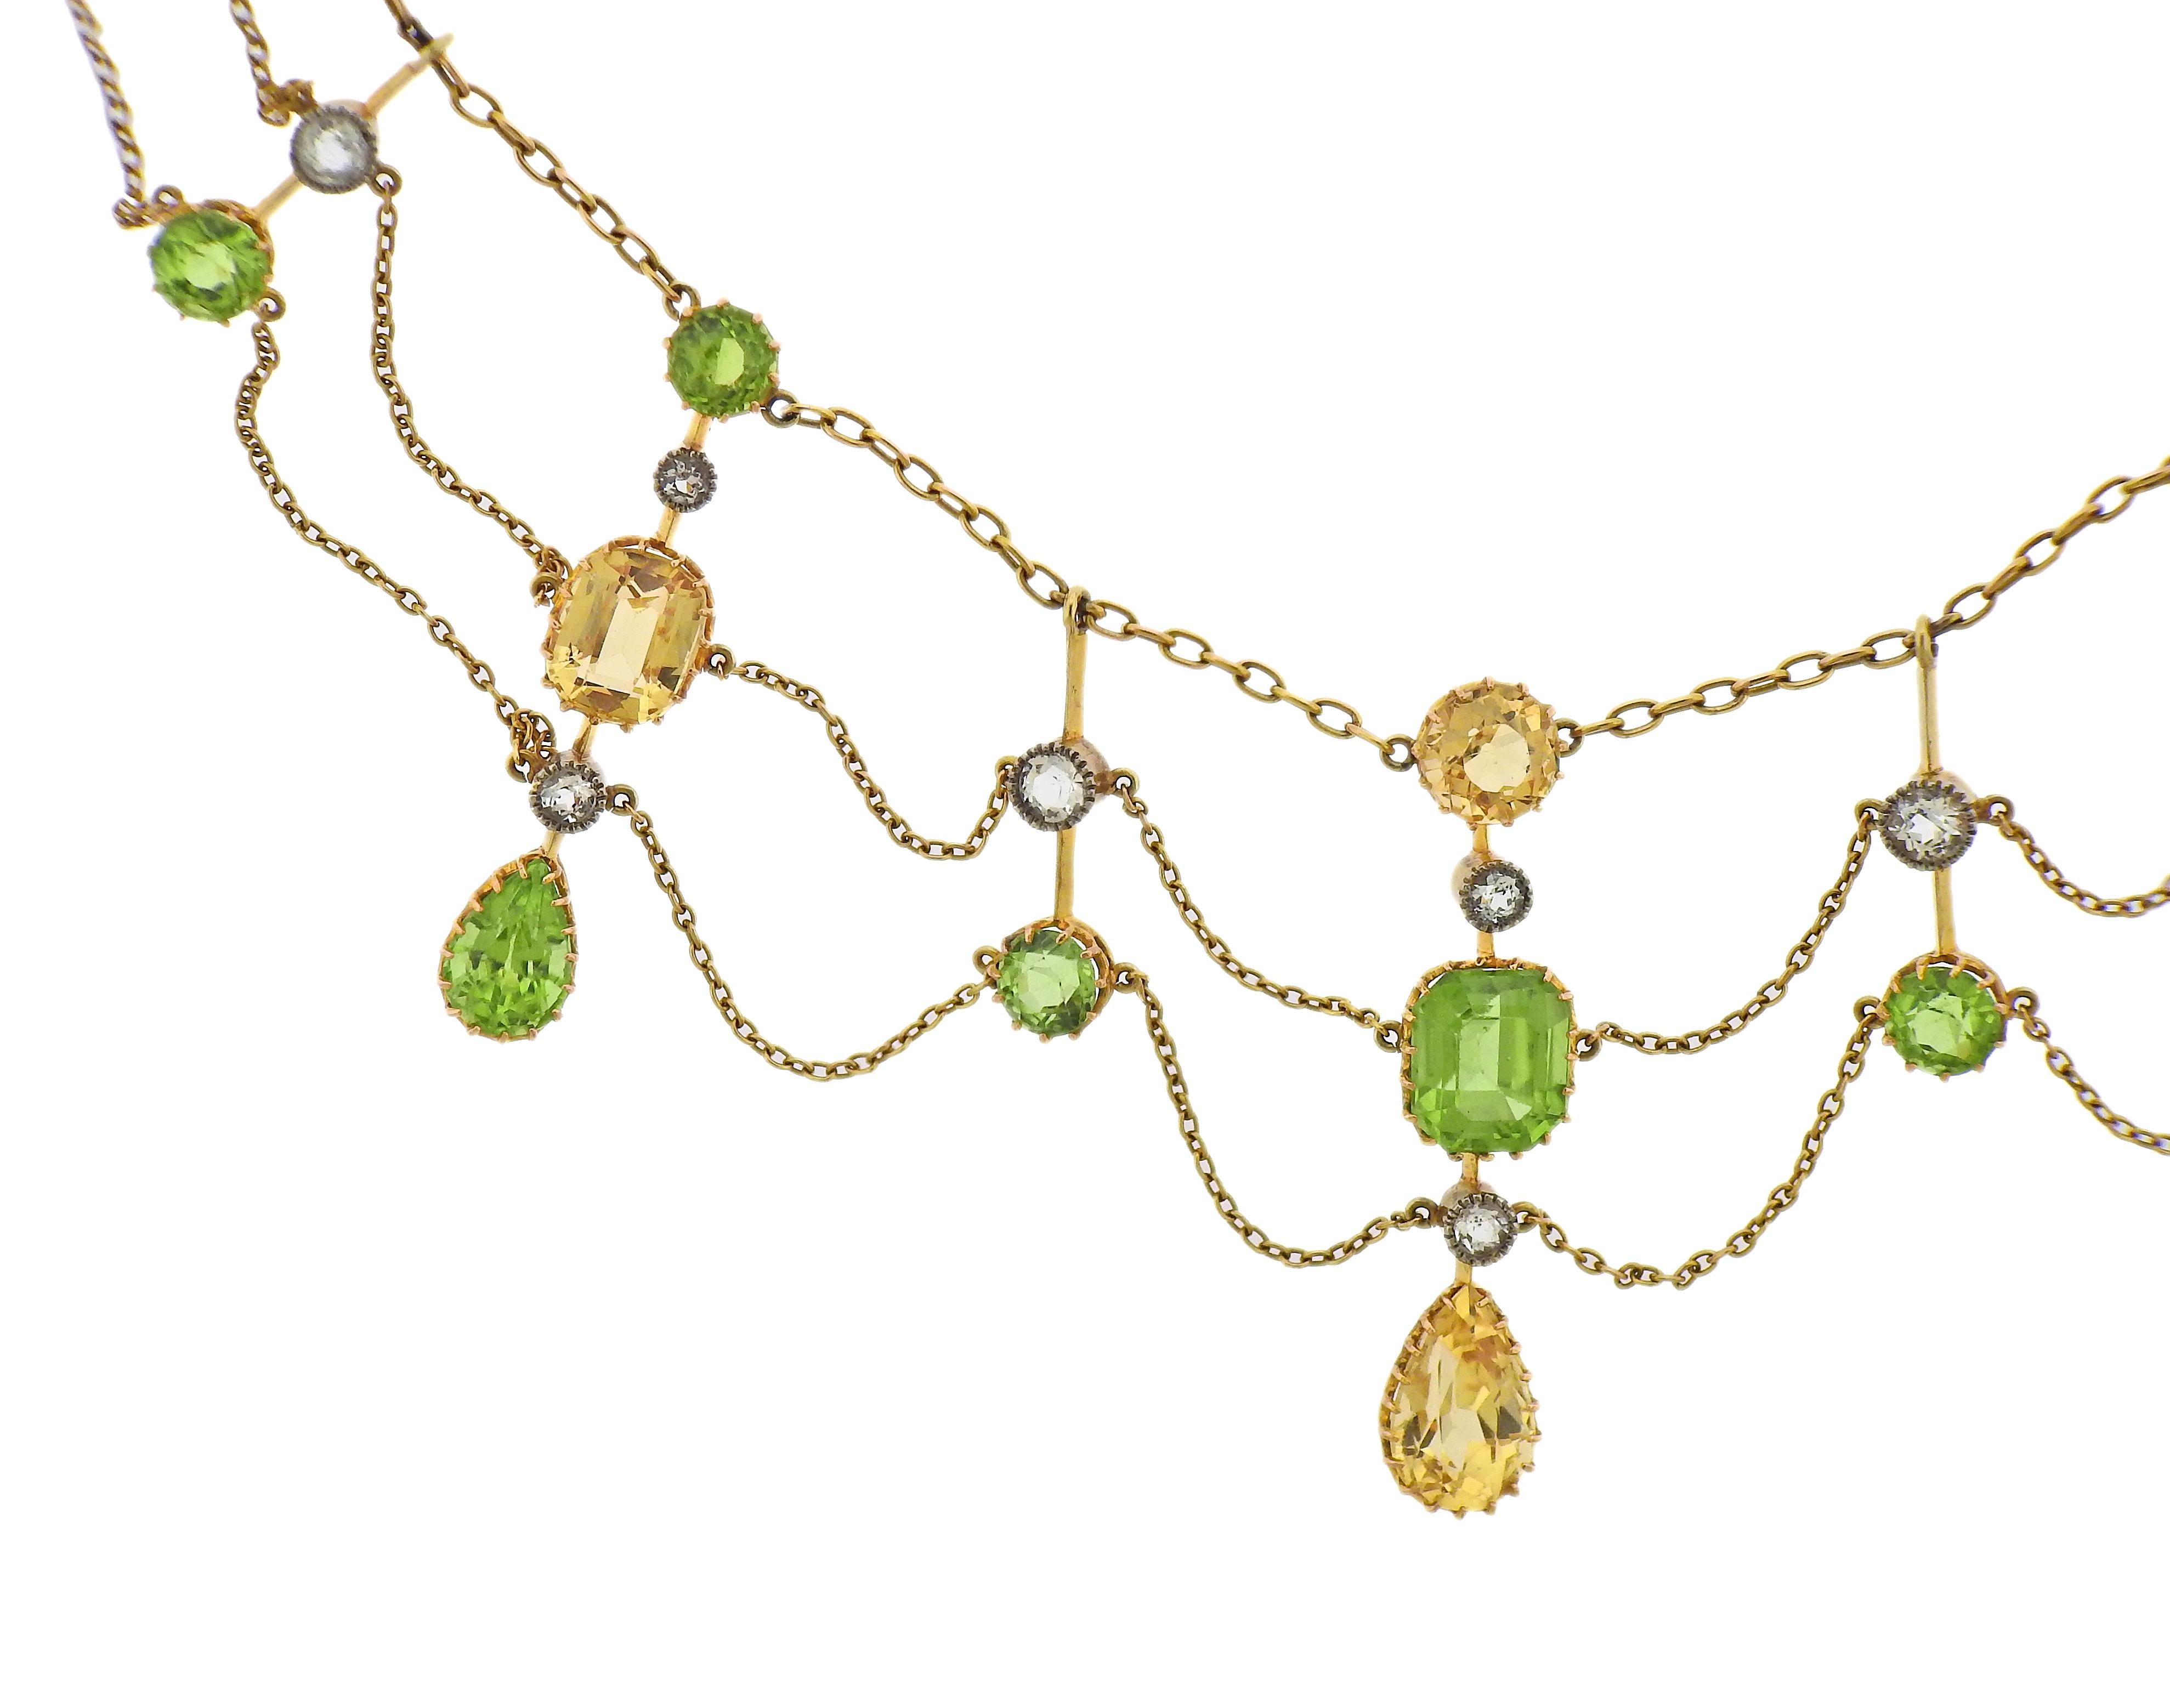 Antike Collier-Halskette aus 14 Karat Gold, besetzt mit Strass, Zitrinen und Peridots. Die Halskette ist 15,25